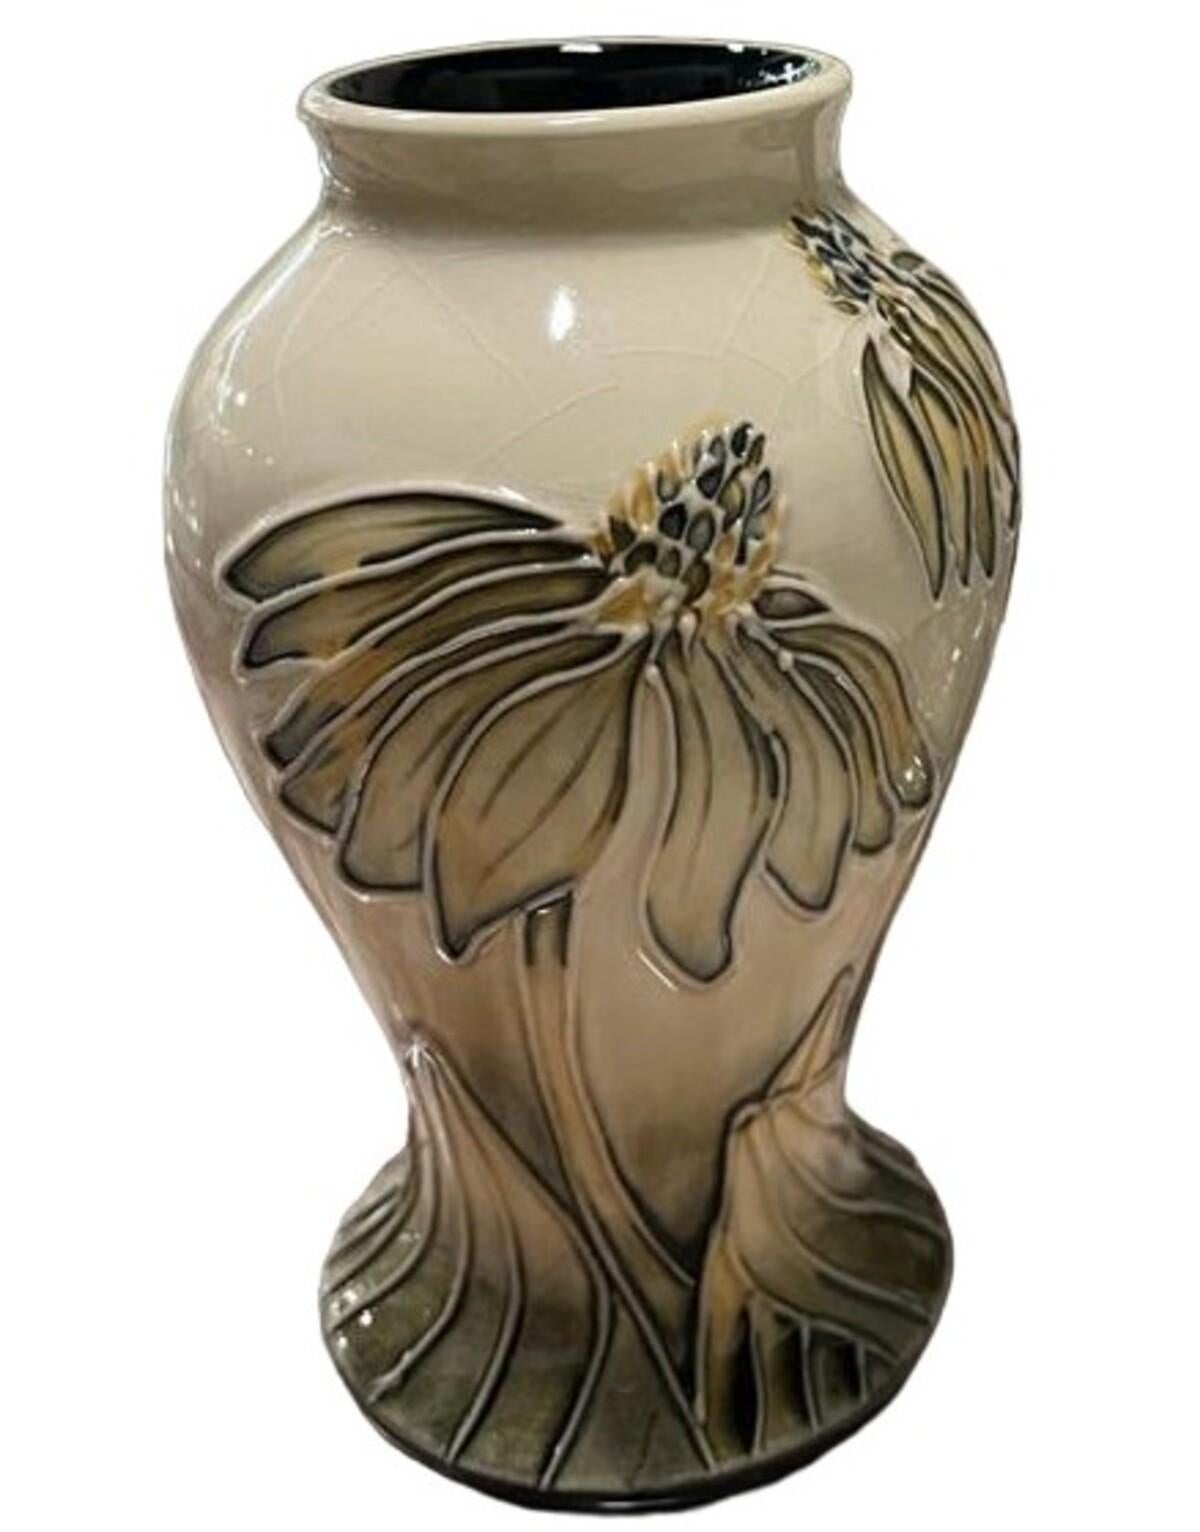 Lot de Moorcroft Pottery. Vase à motif 